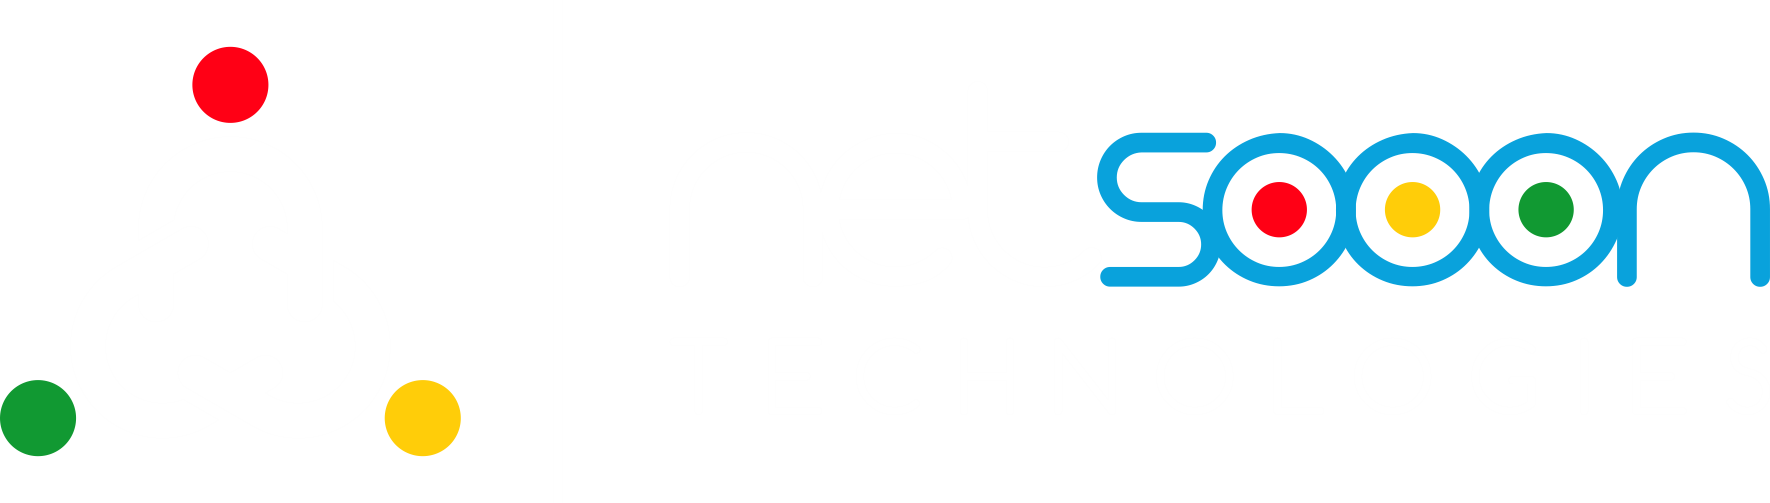 Netsooon Technologoes